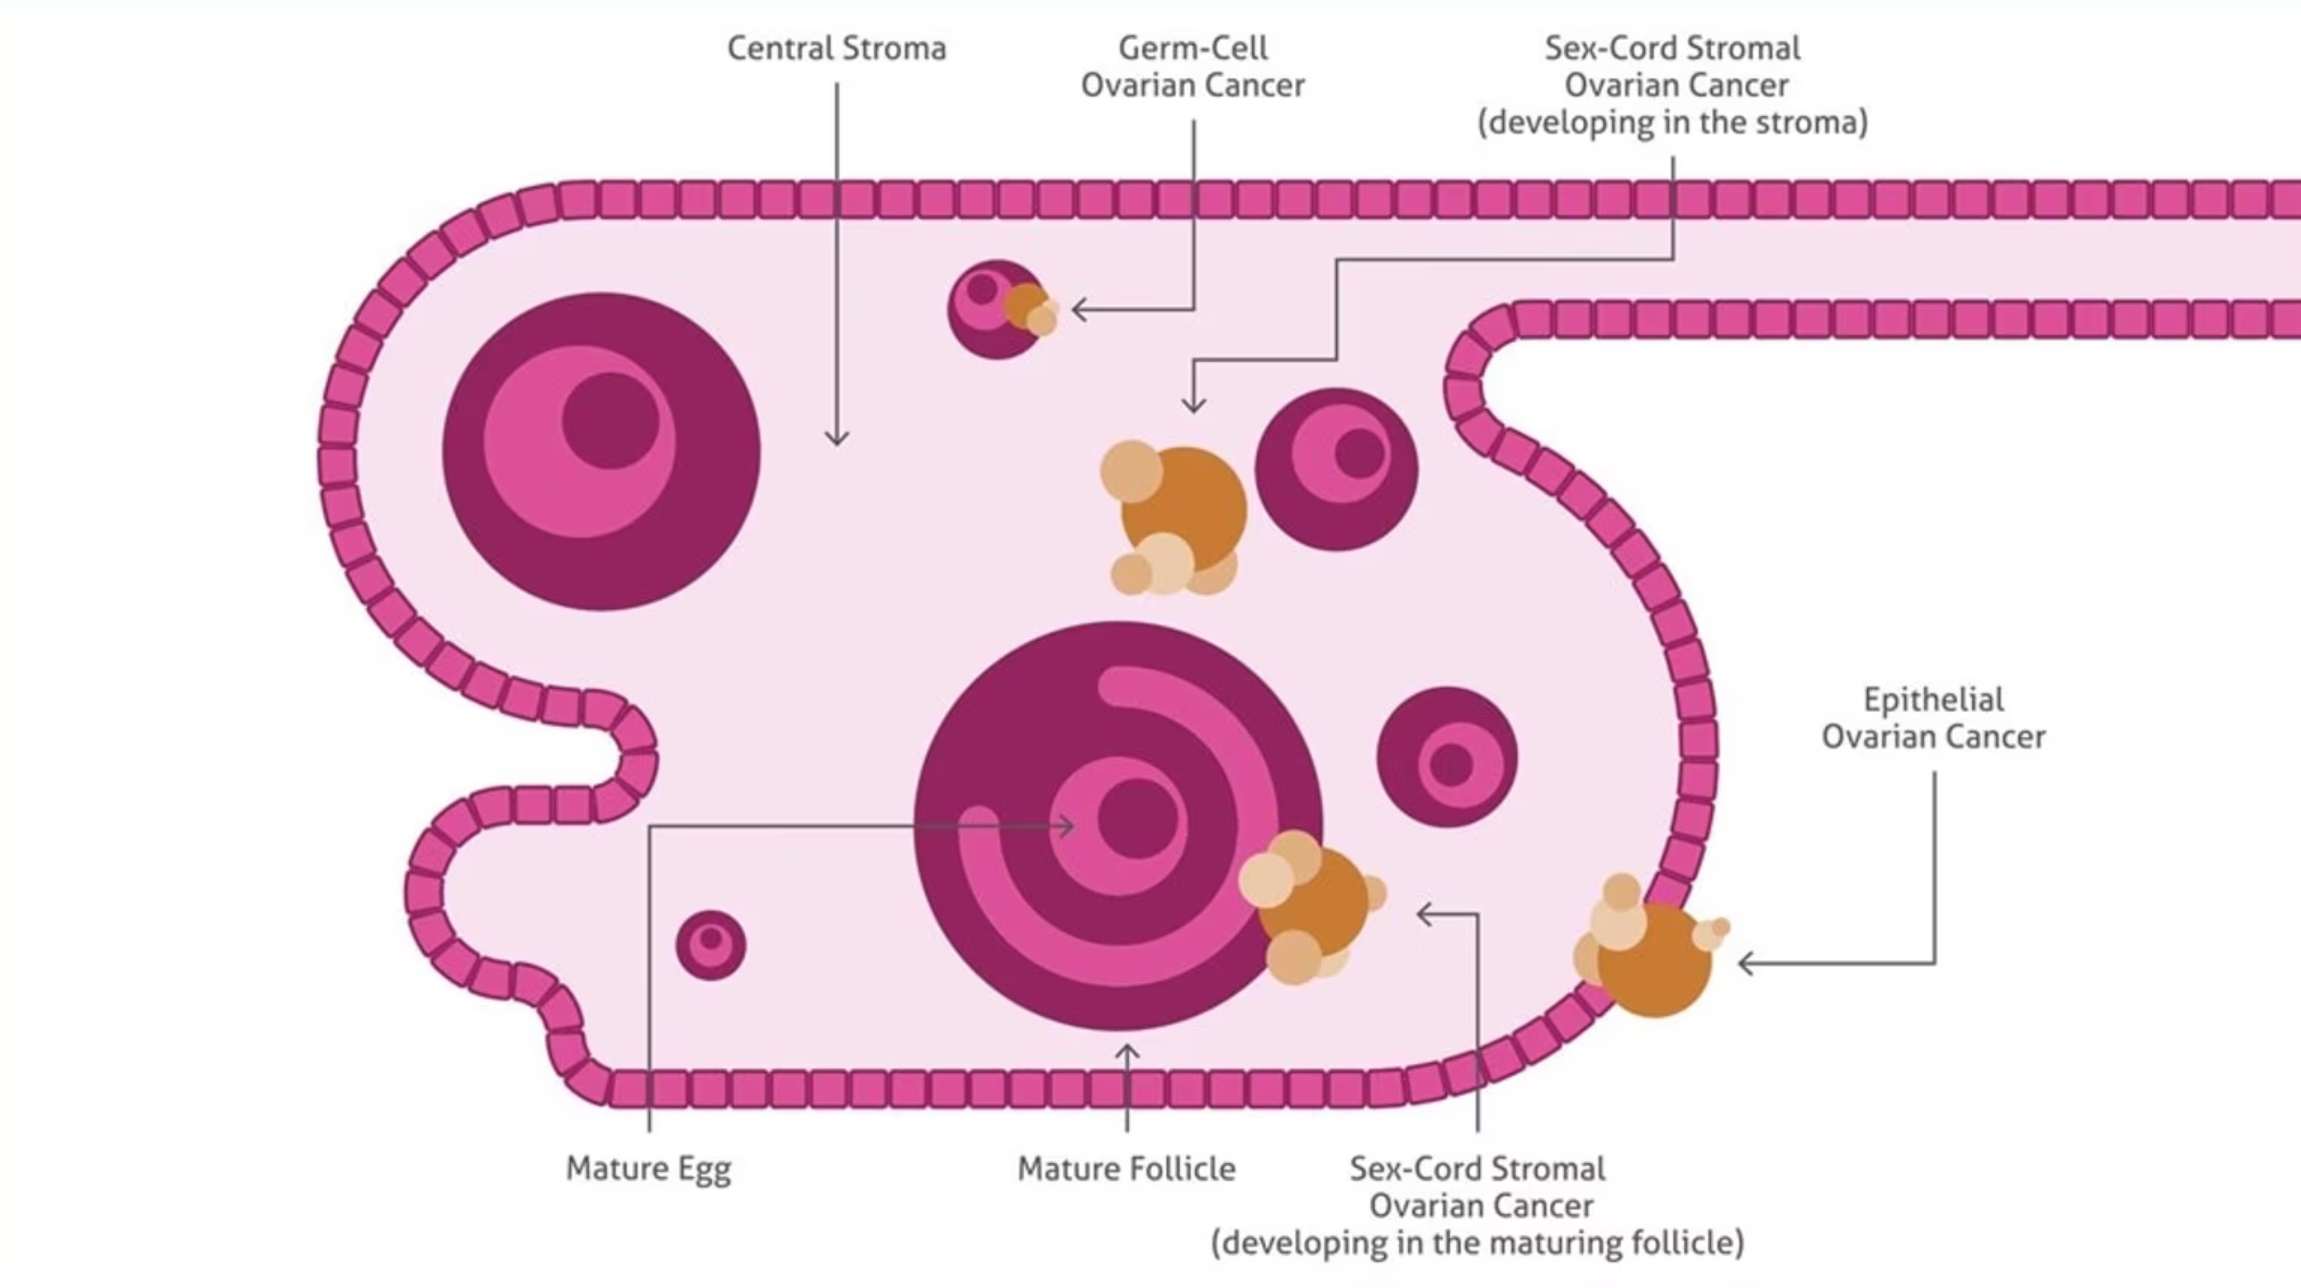 卵巣がんの種類と由来する組織部位を示した卵巣のイラスト